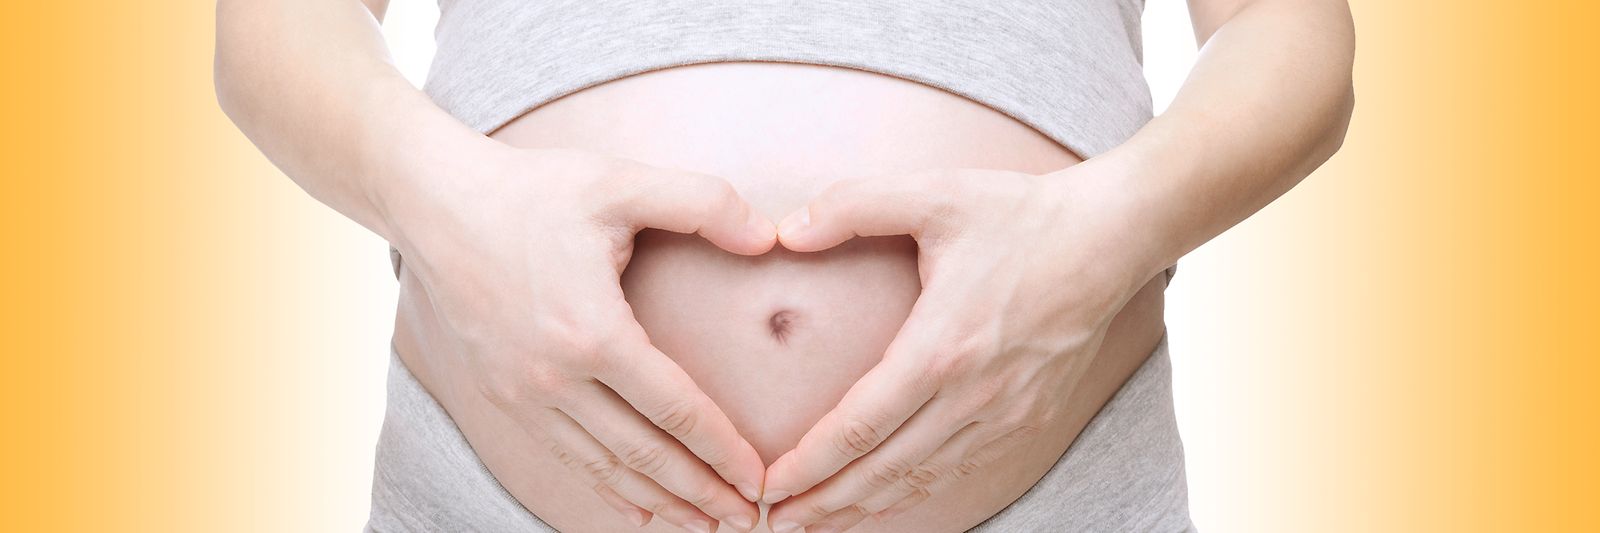 Hände formen ein Herz auf dem Bauch einer schwangeren Frau